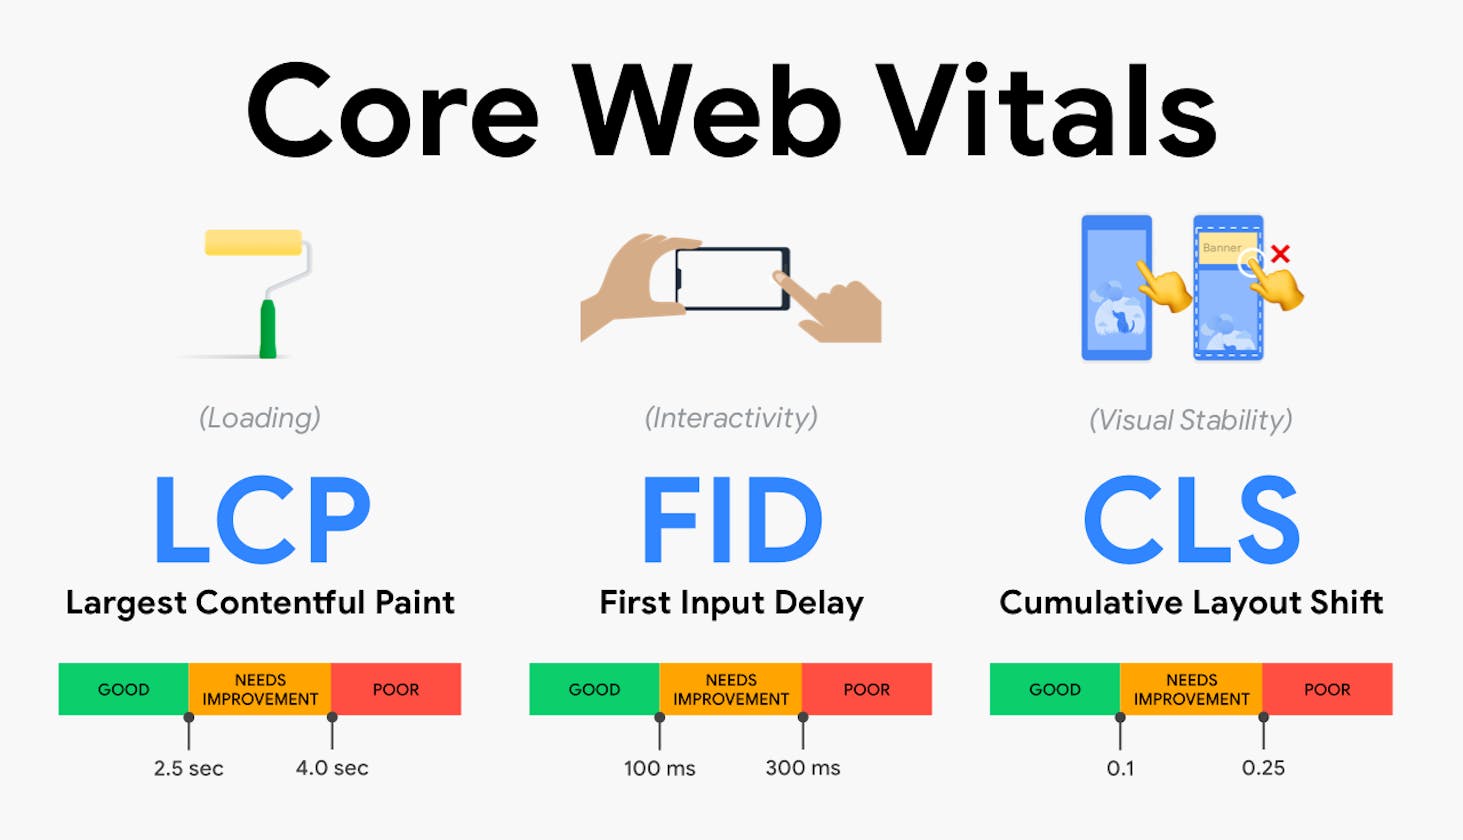 The Core Web Vitals For Better Development